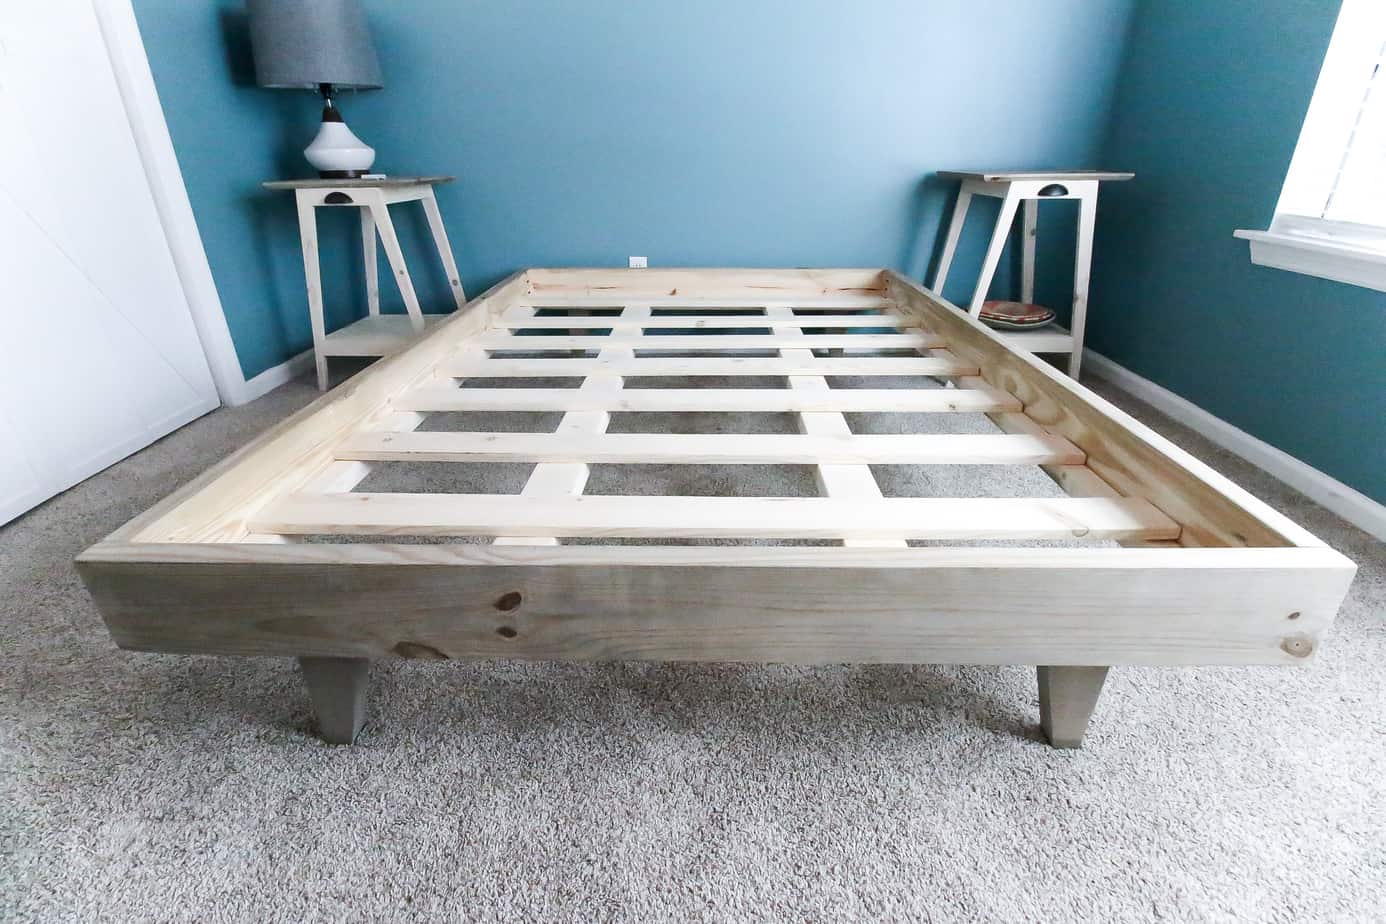 How To Build A Platform Bed For 50, Building A King Size Platform Bed Frame